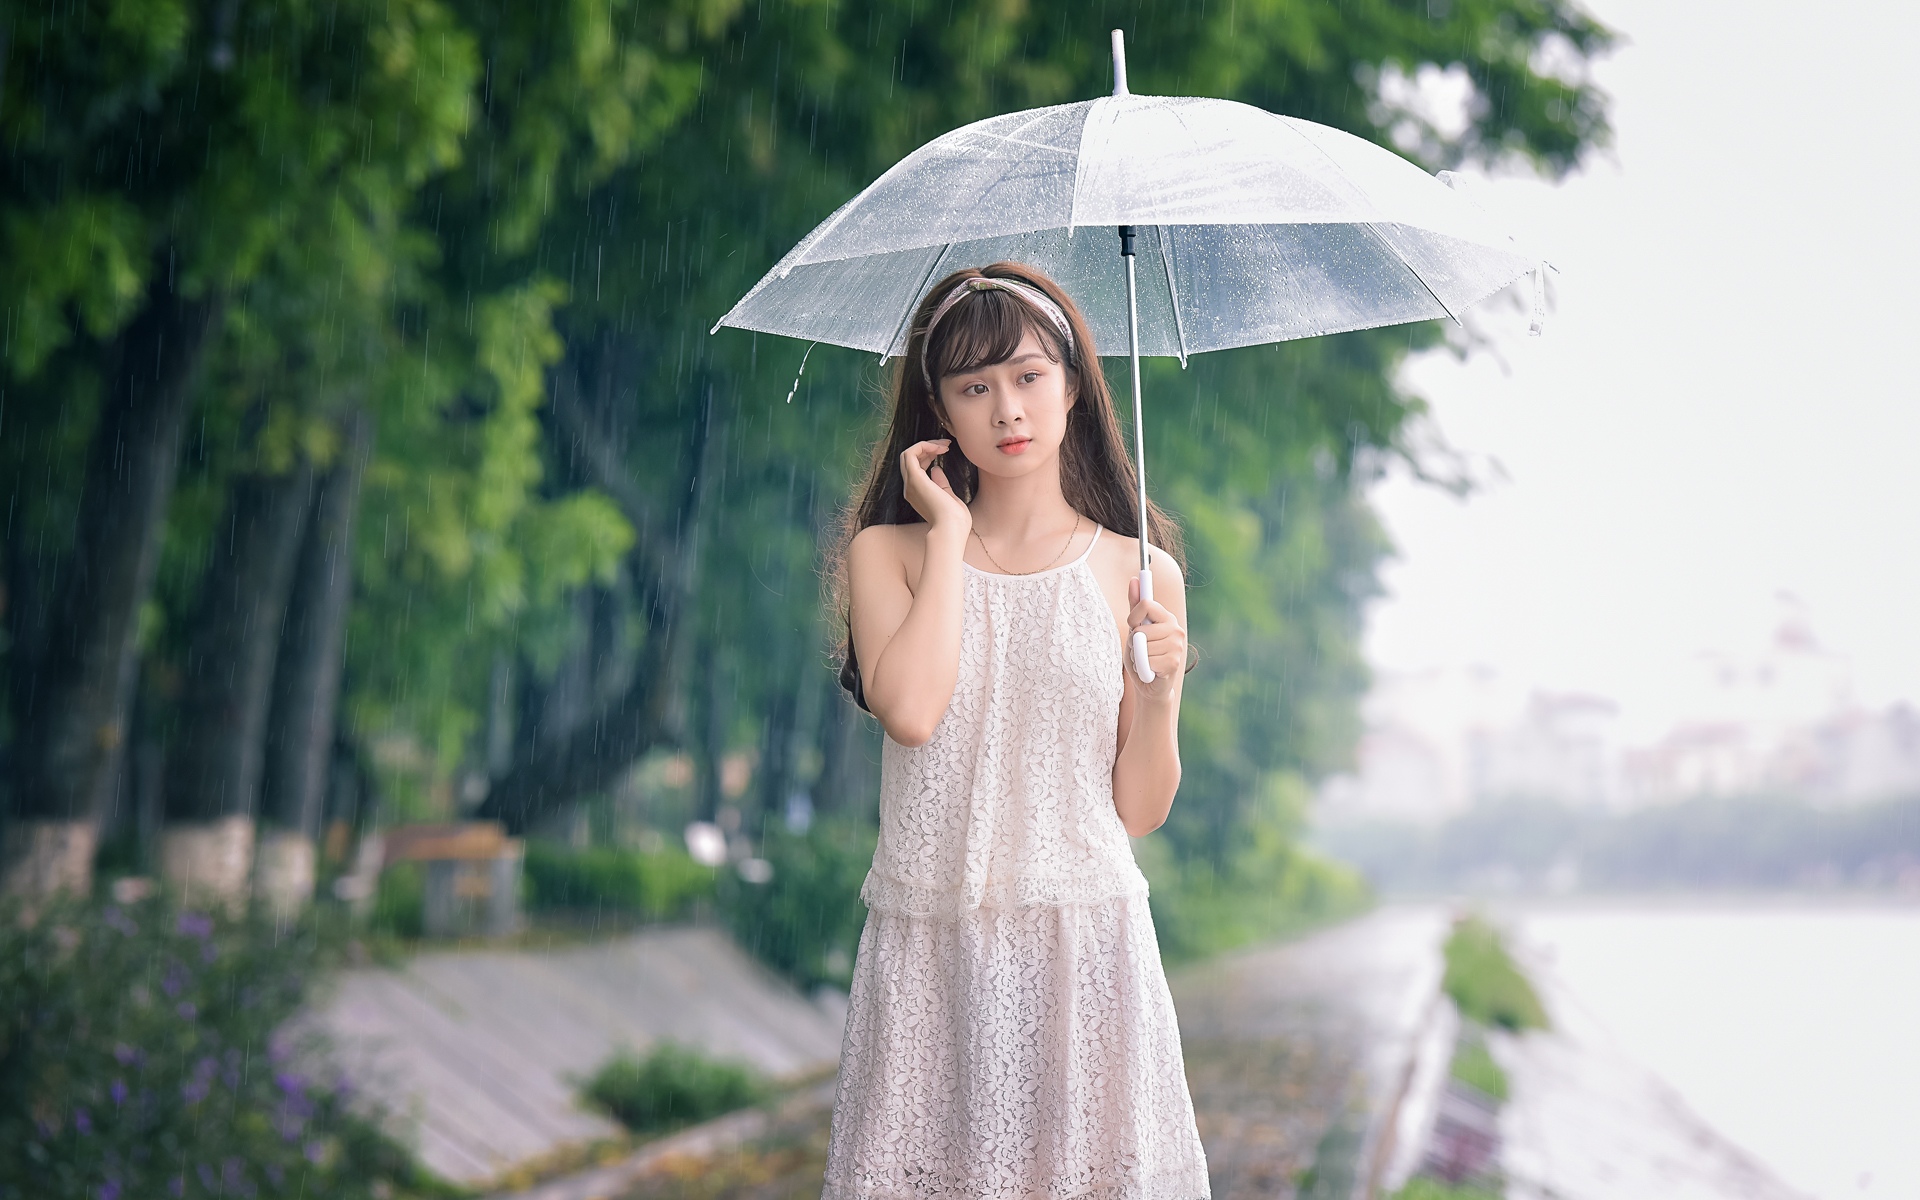 下雨一个人打伞的图片 下雨一个人孤单的图片